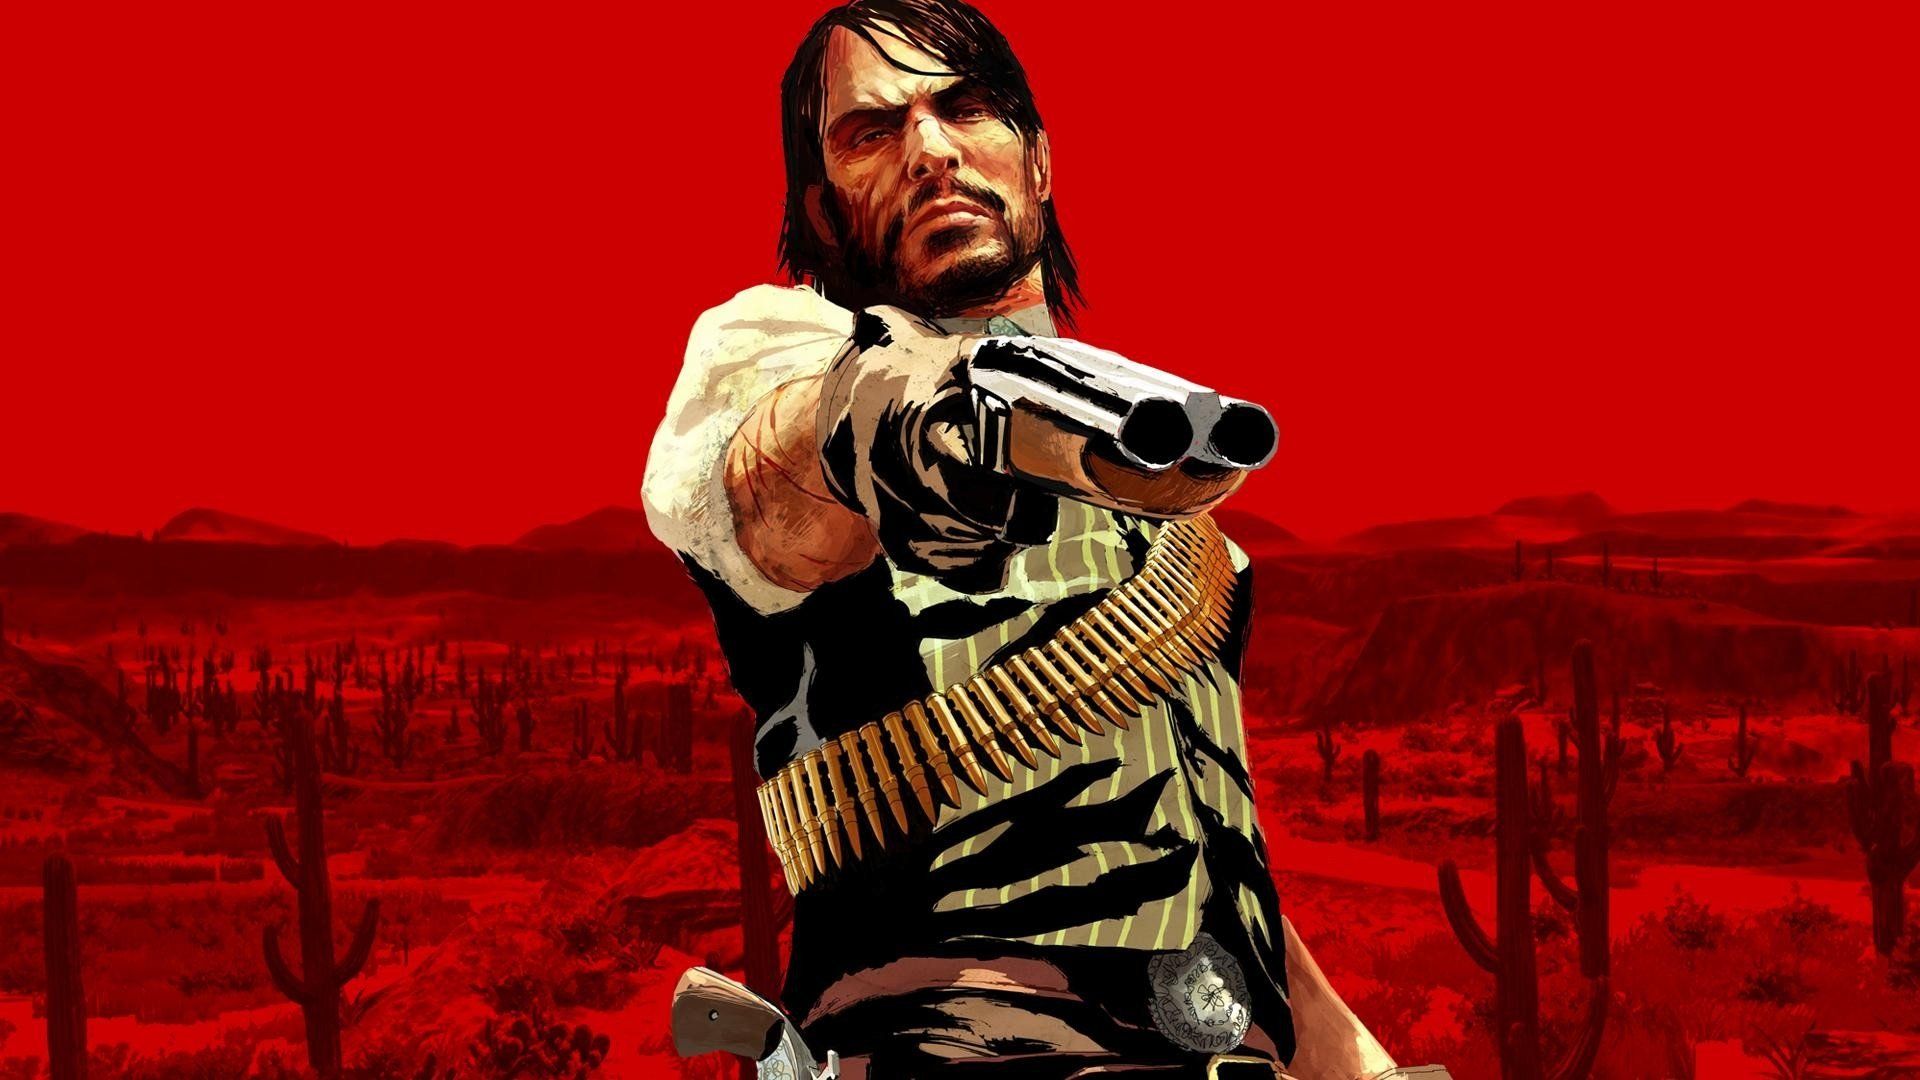 خلاصه اخبار روز: از ریمستر Red Dead Redemption تا ریبوت GTA 6